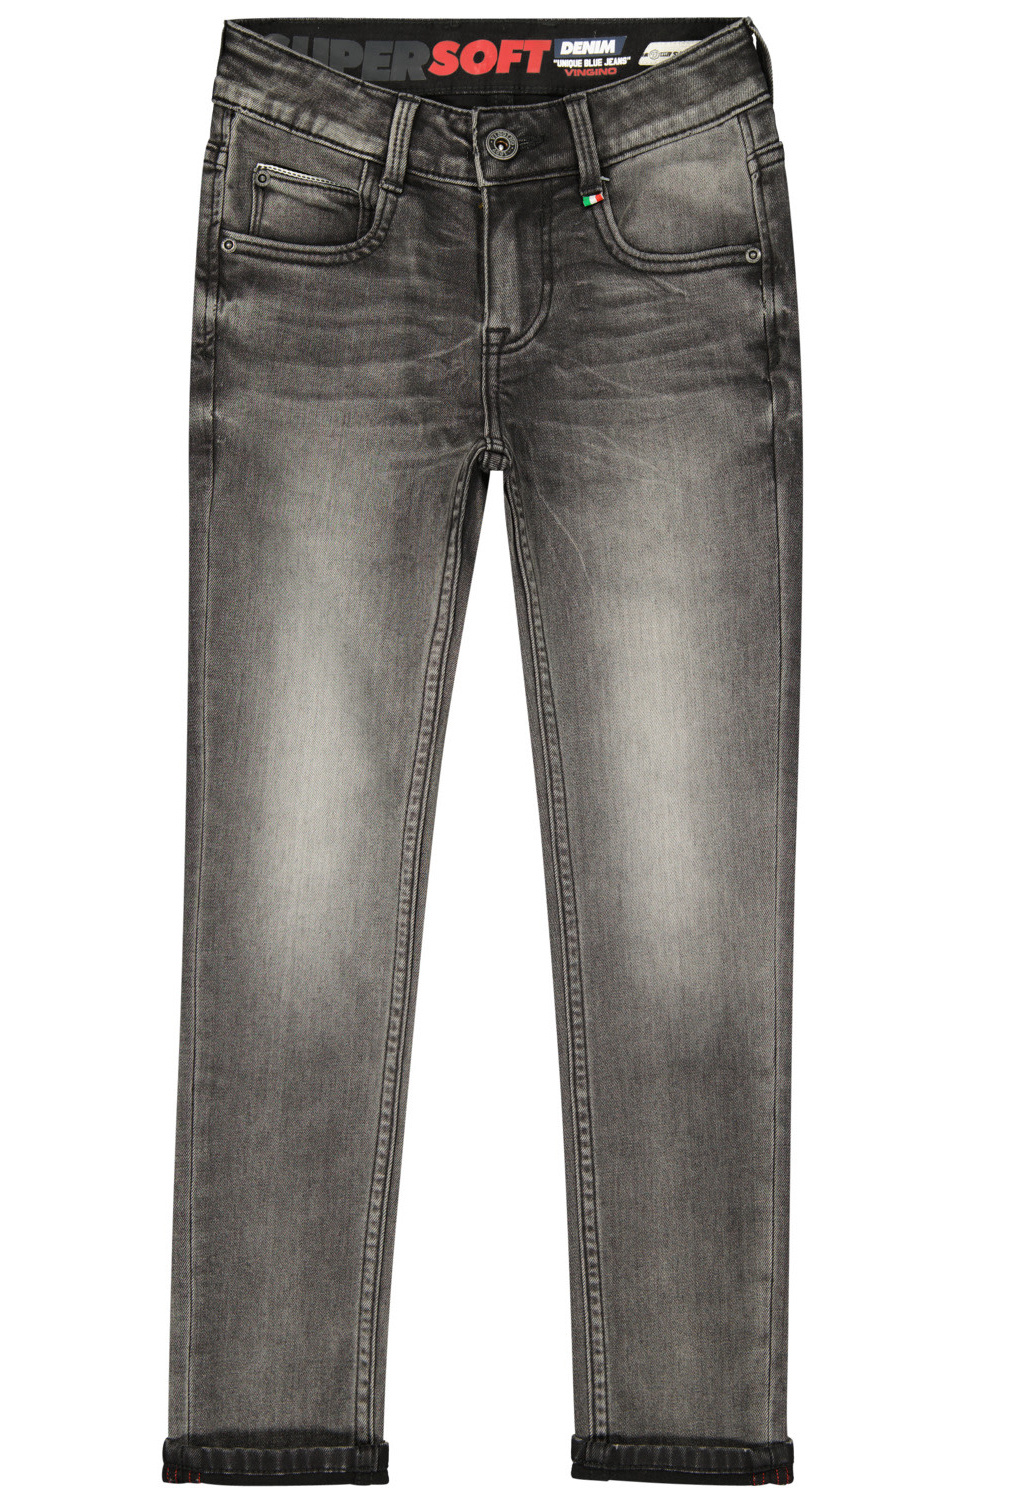 Afbeelding van Vingino Jongens jeans super soft skinny fit amos dark grey vintage